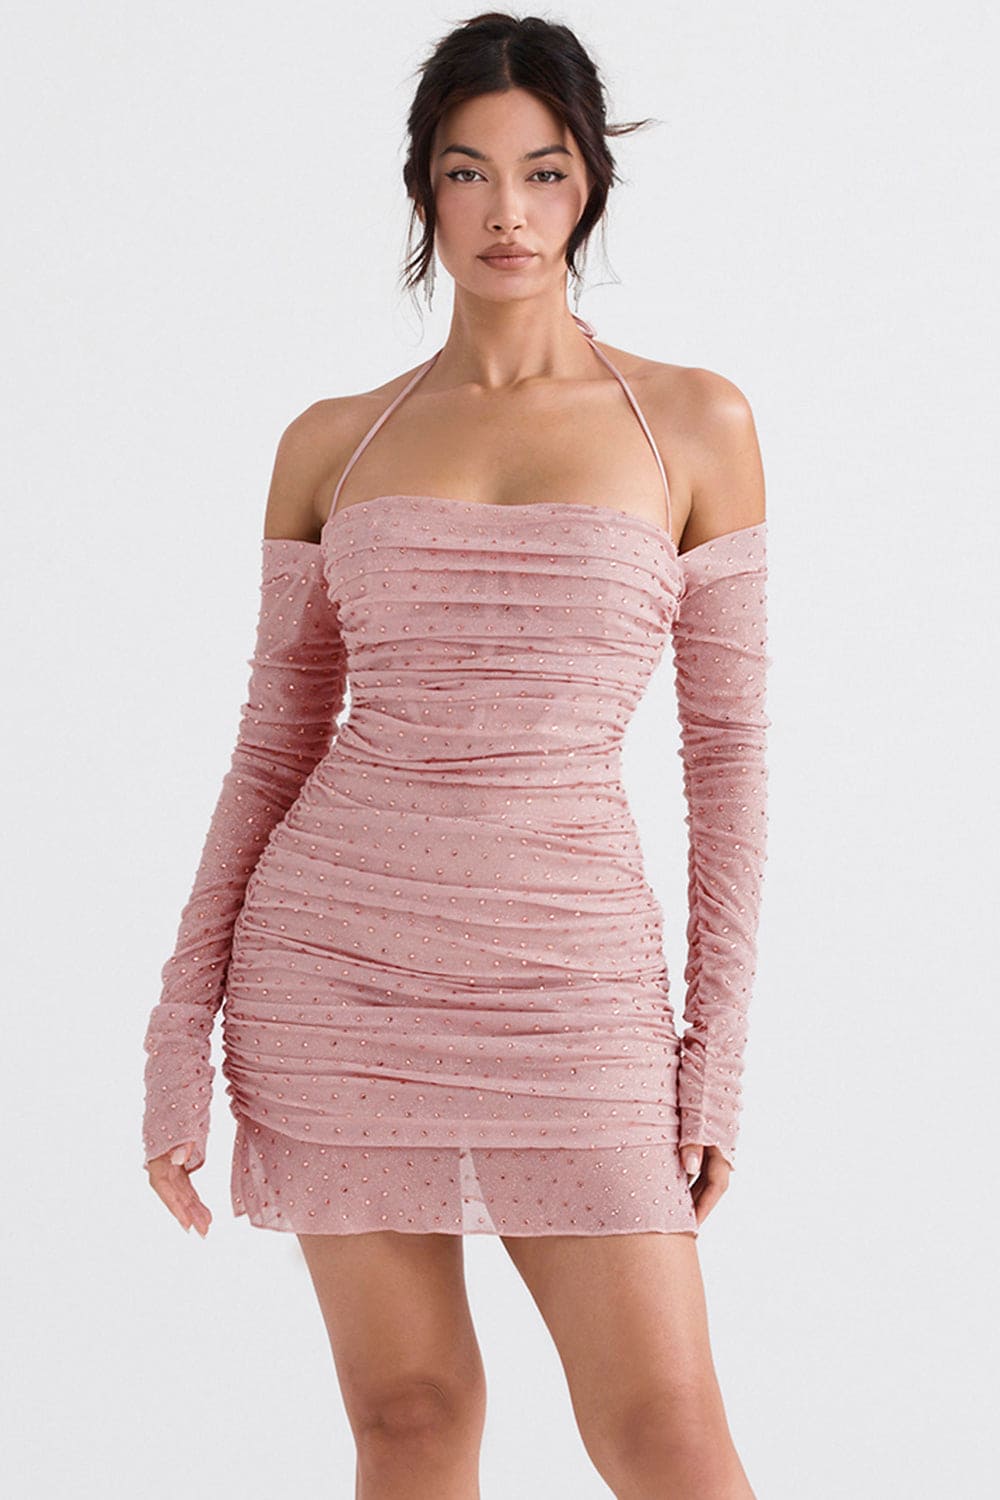 Estella Soft Pink Crystallised Dress